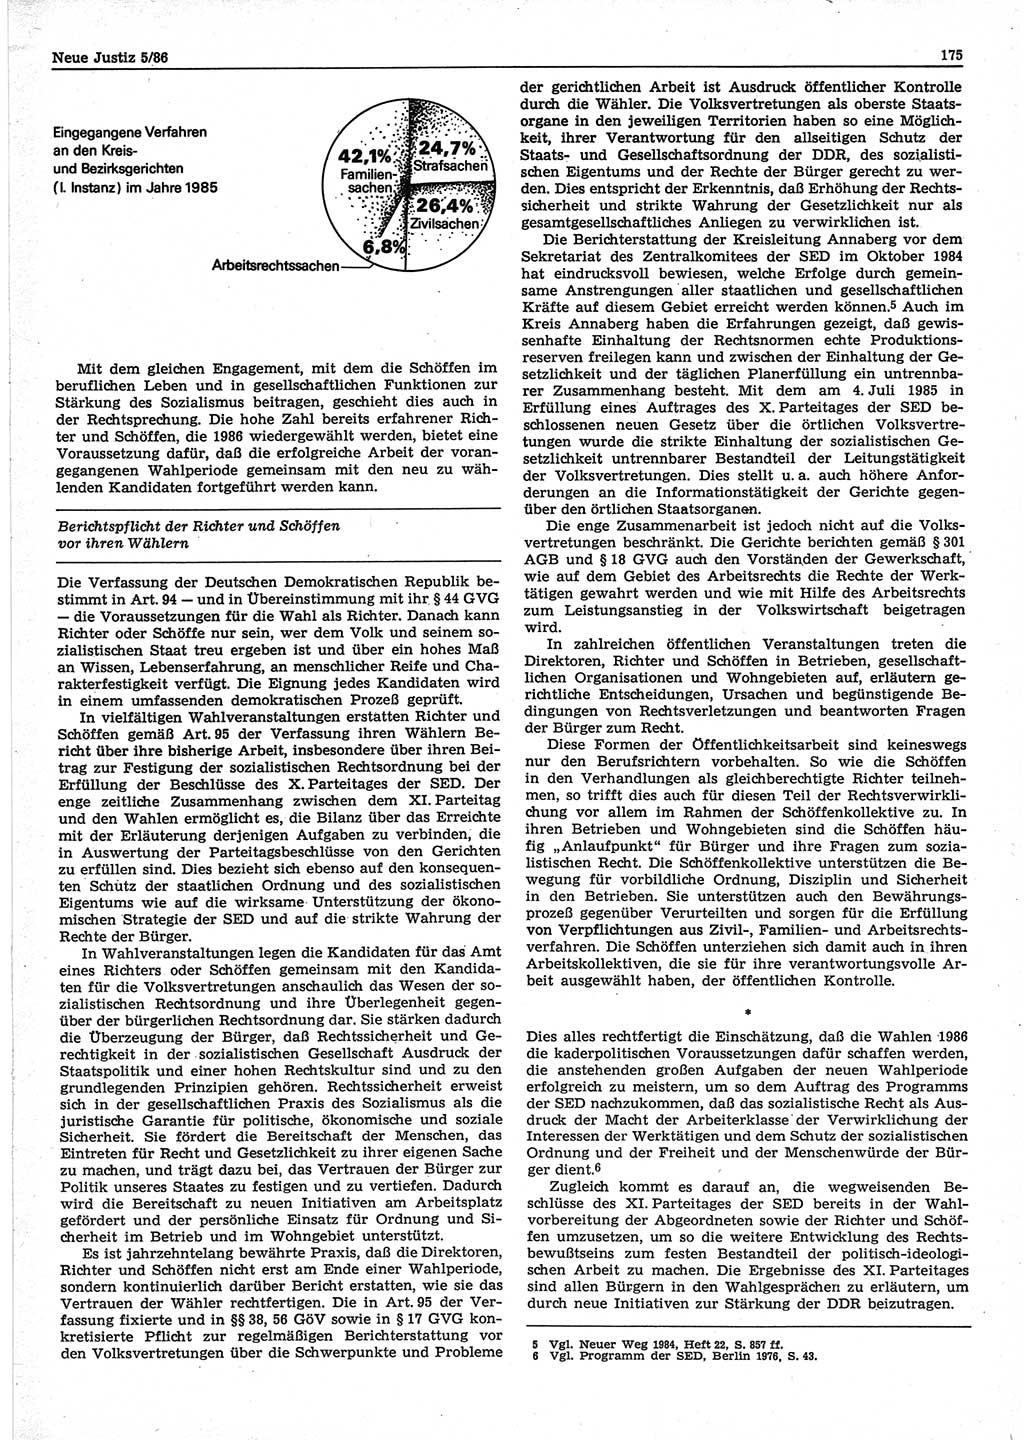 Neue Justiz (NJ), Zeitschrift für sozialistisches Recht und Gesetzlichkeit [Deutsche Demokratische Republik (DDR)], 40. Jahrgang 1986, Seite 175 (NJ DDR 1986, S. 175)